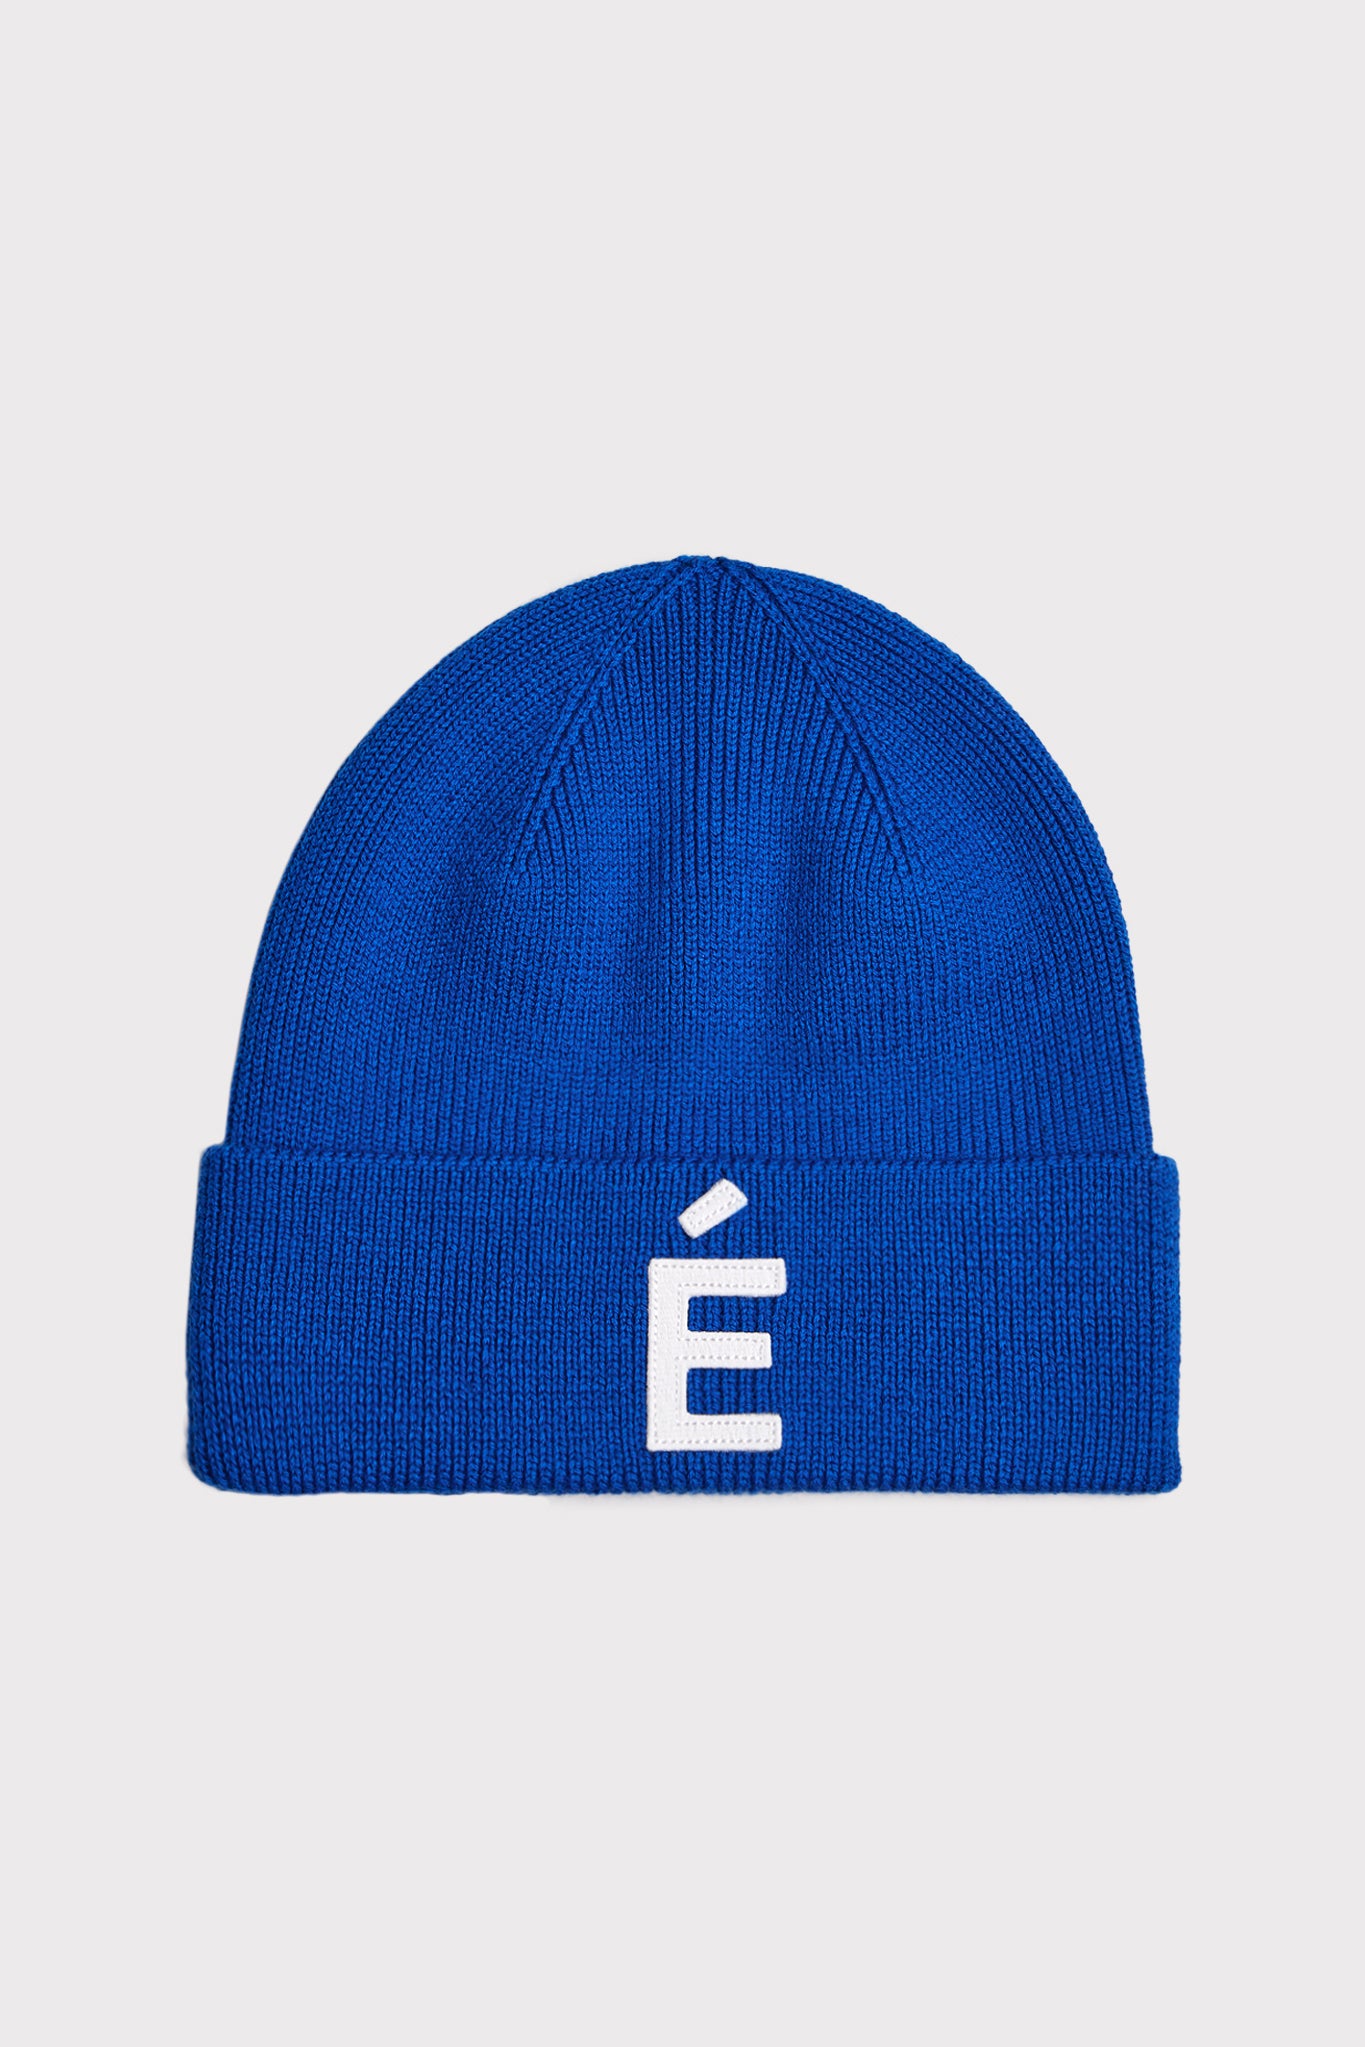 ÉTUDES BEANIE PATCH BLUE HATS 1